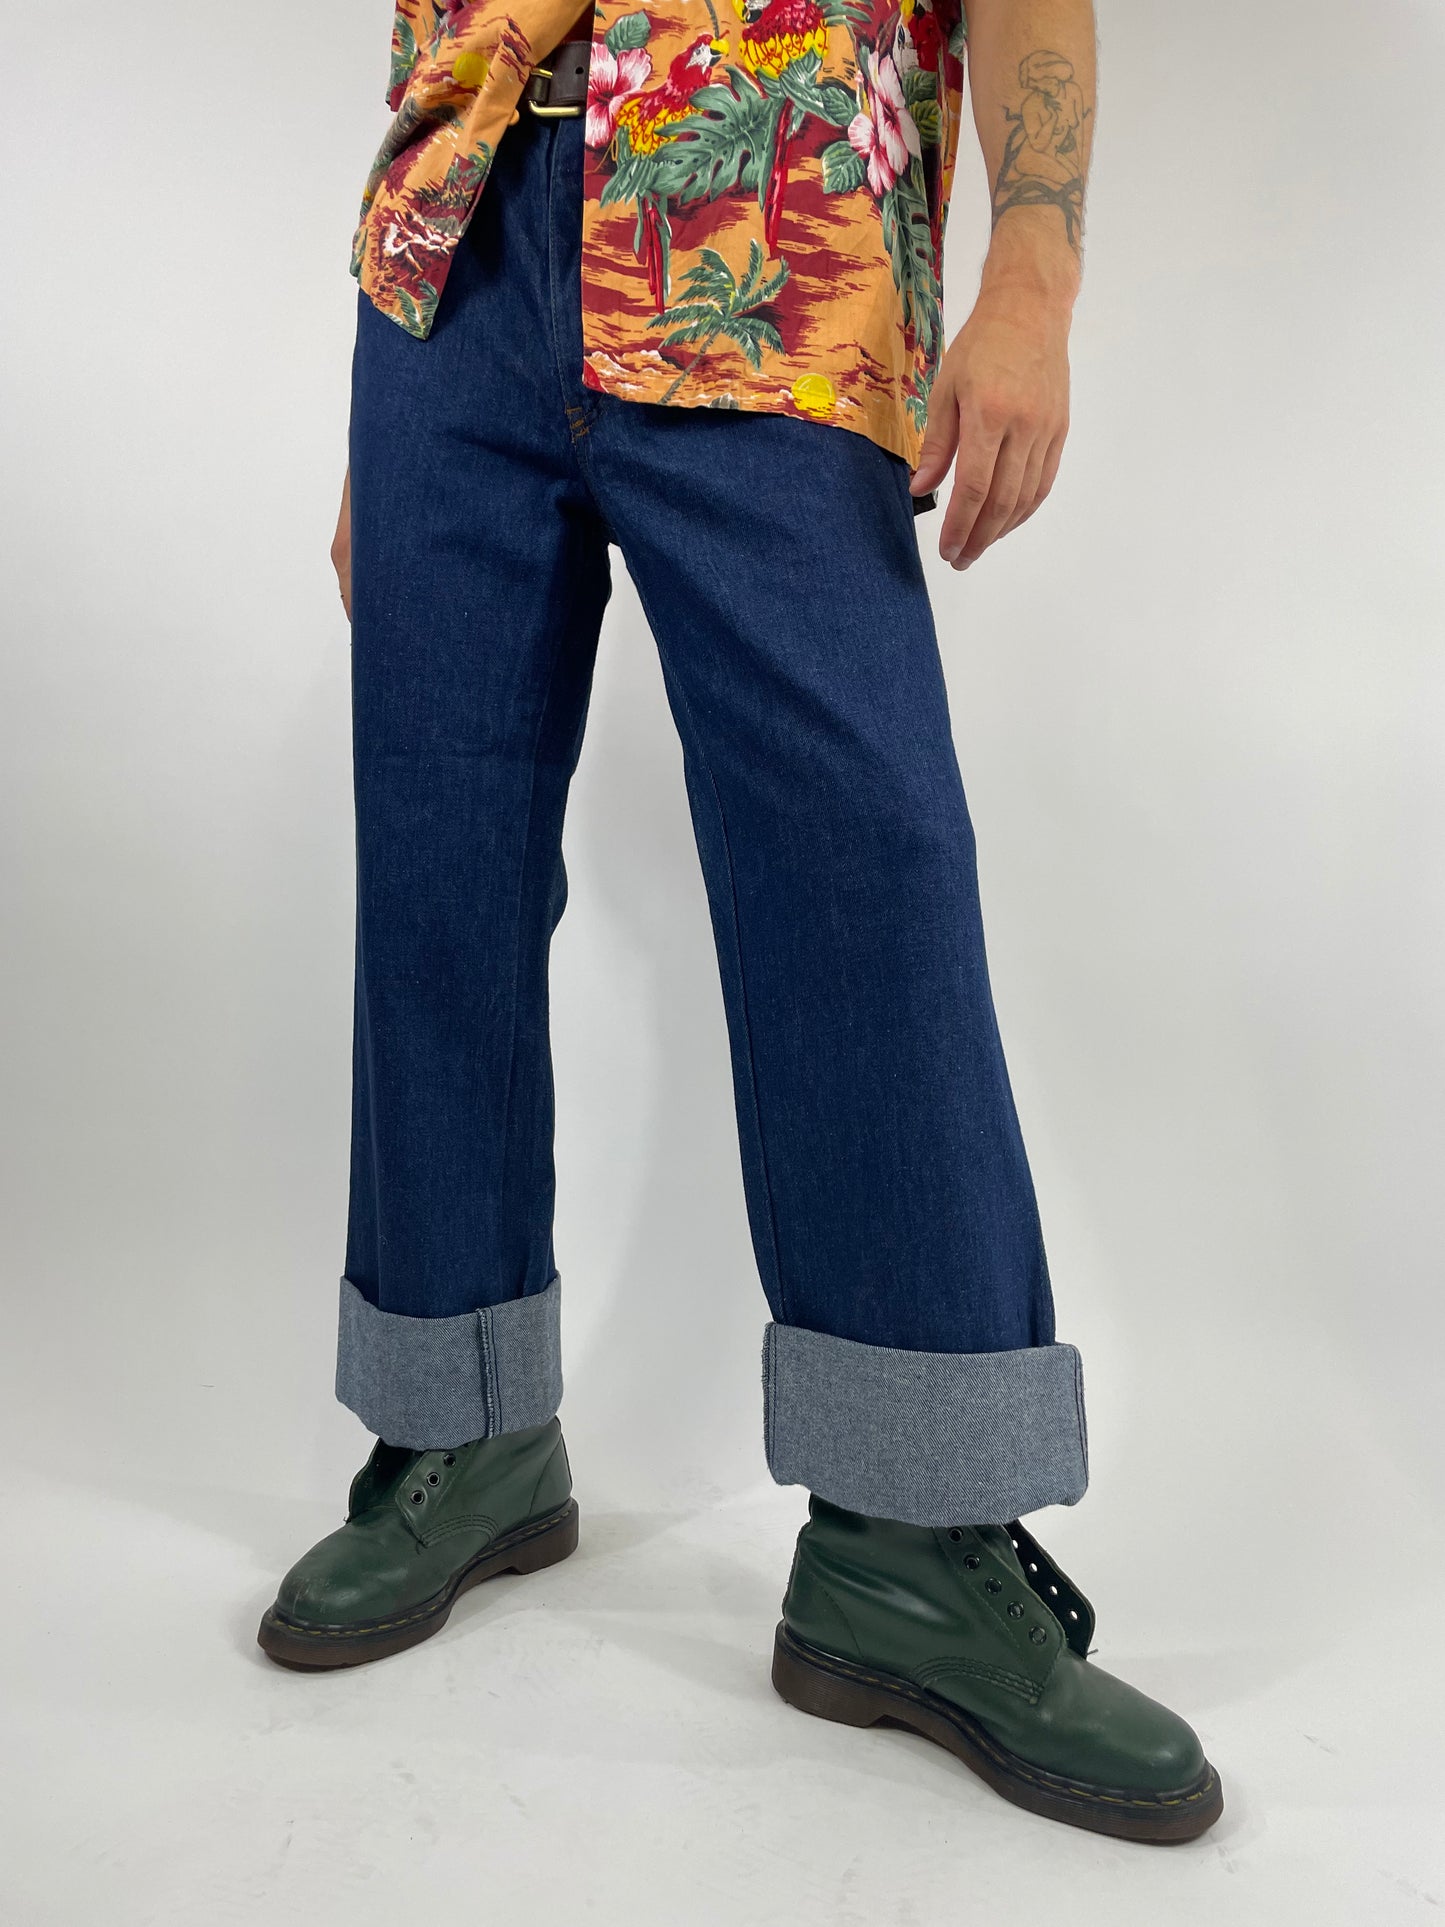 Jeans-Mash der 1980er Jahre